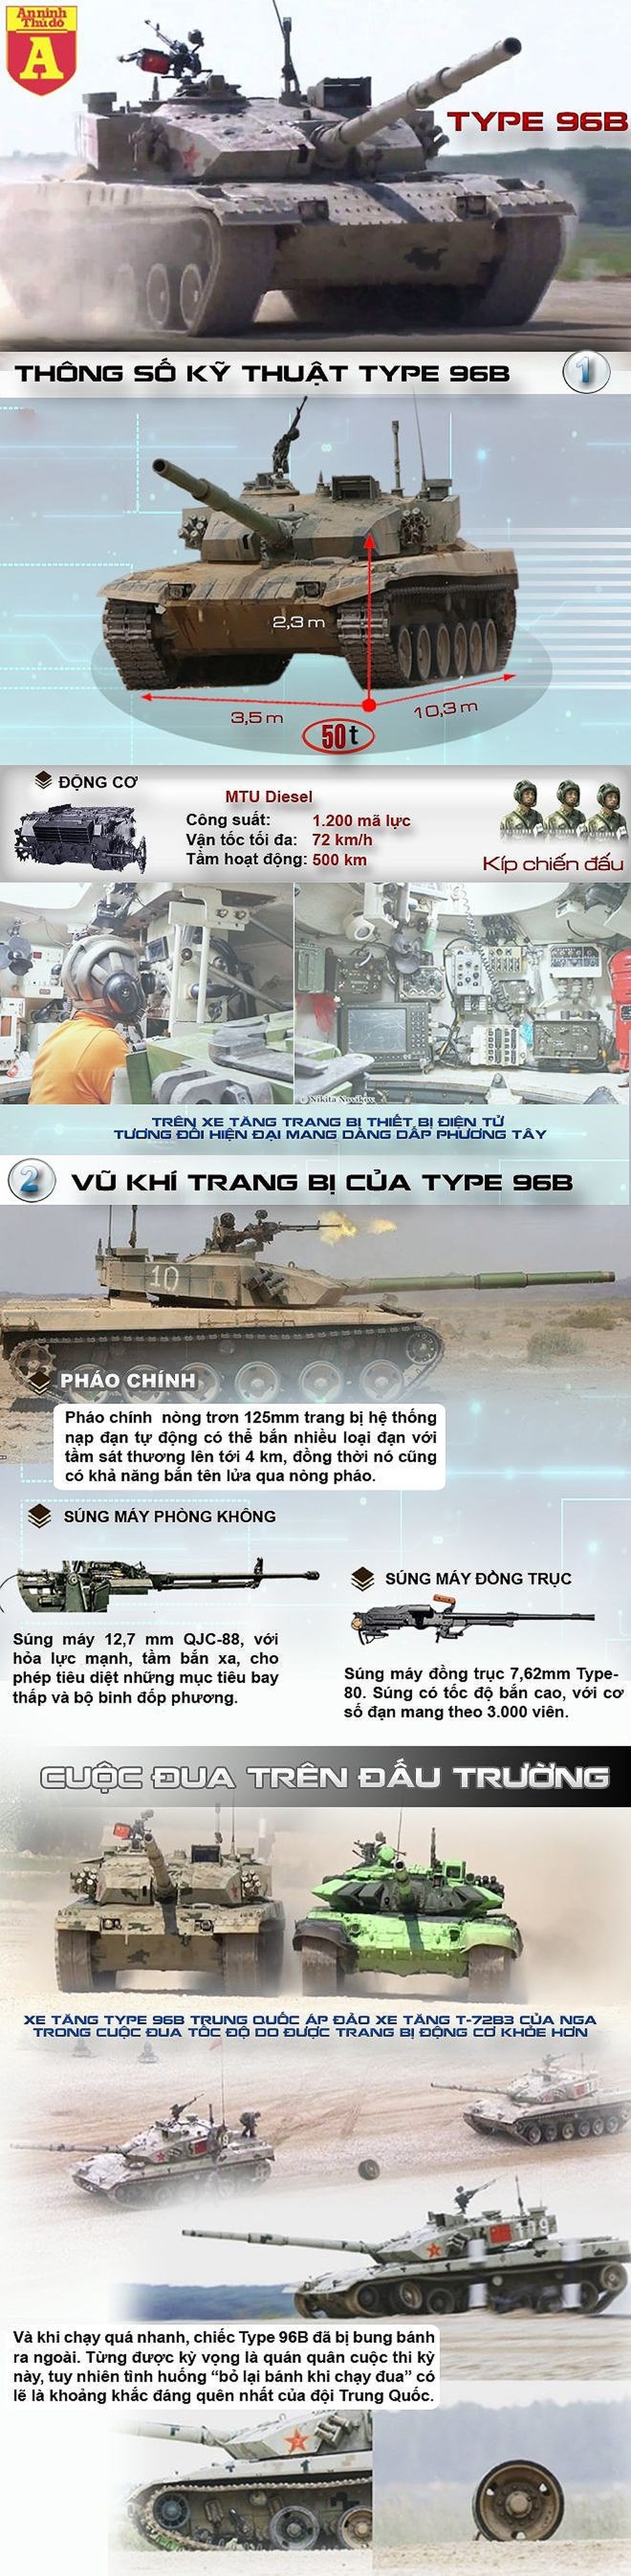 [Info] Trung Quốc đã thua giải đấu tăng dù mang xe tăng "quốc bảo" Type-96B đi thi đấu ảnh 2